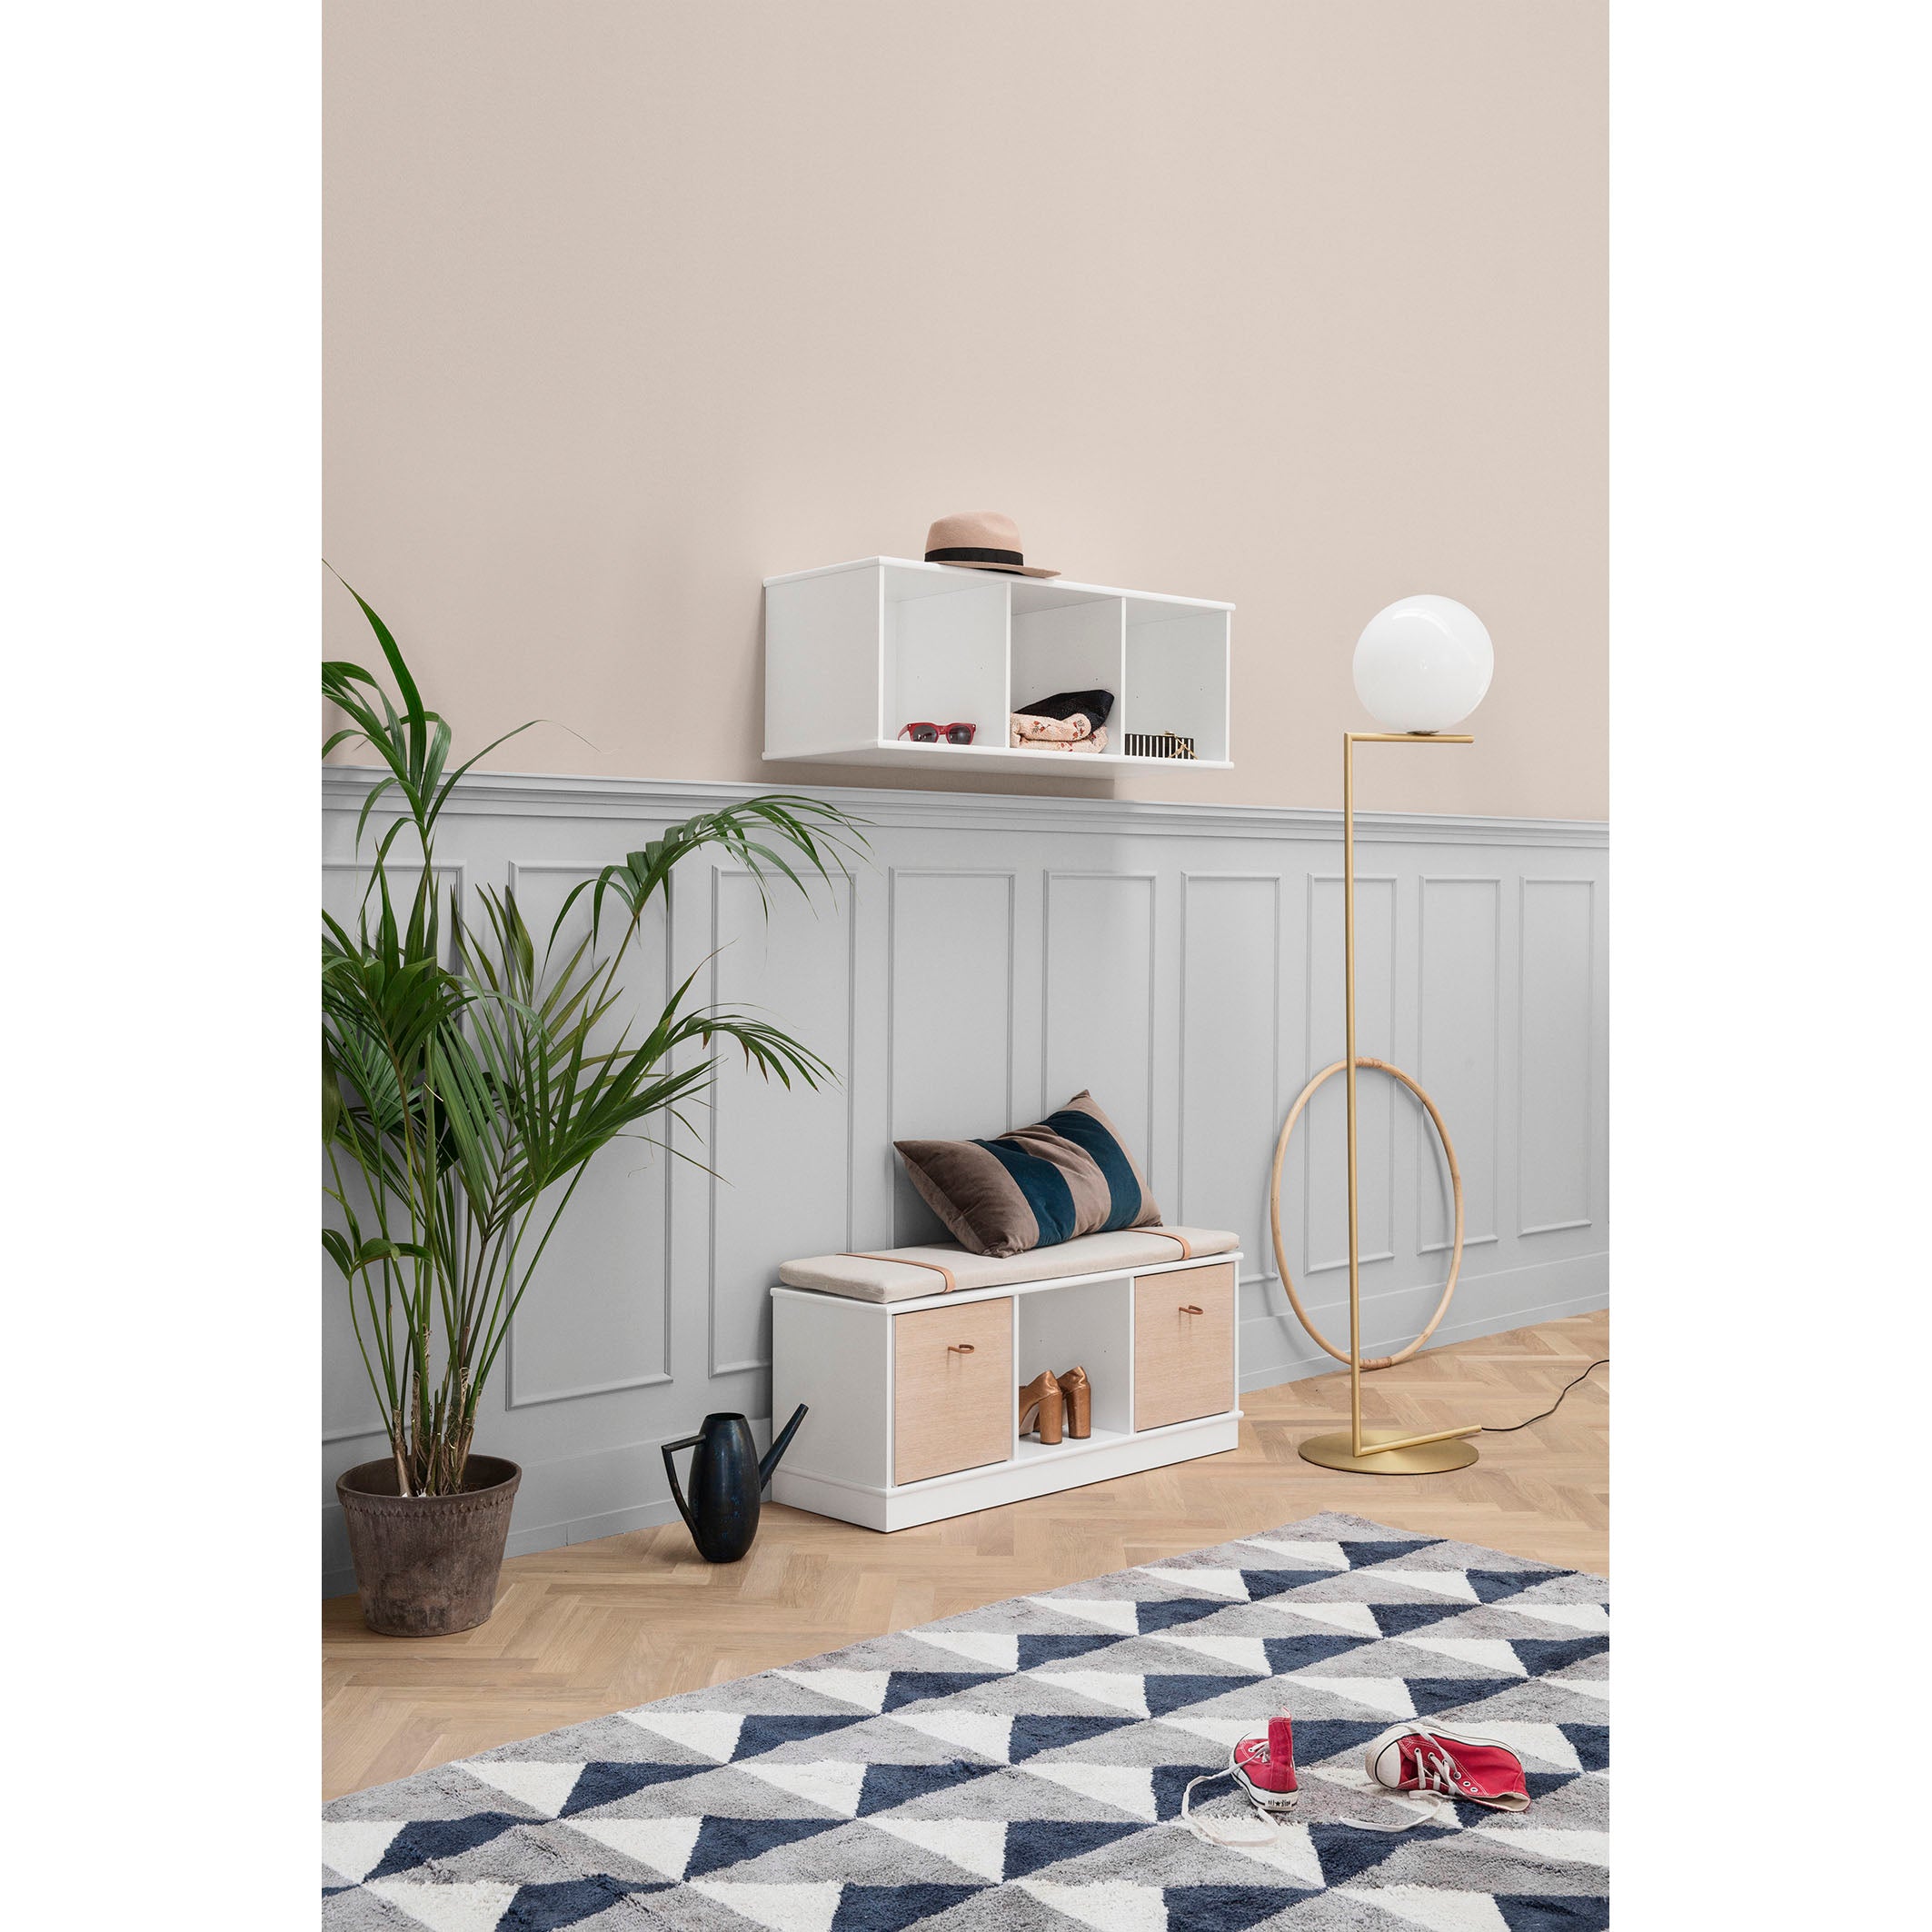 oliver-furniture-wood-shelving-unit-3x1-horizontal-shelf-with-base- (3)